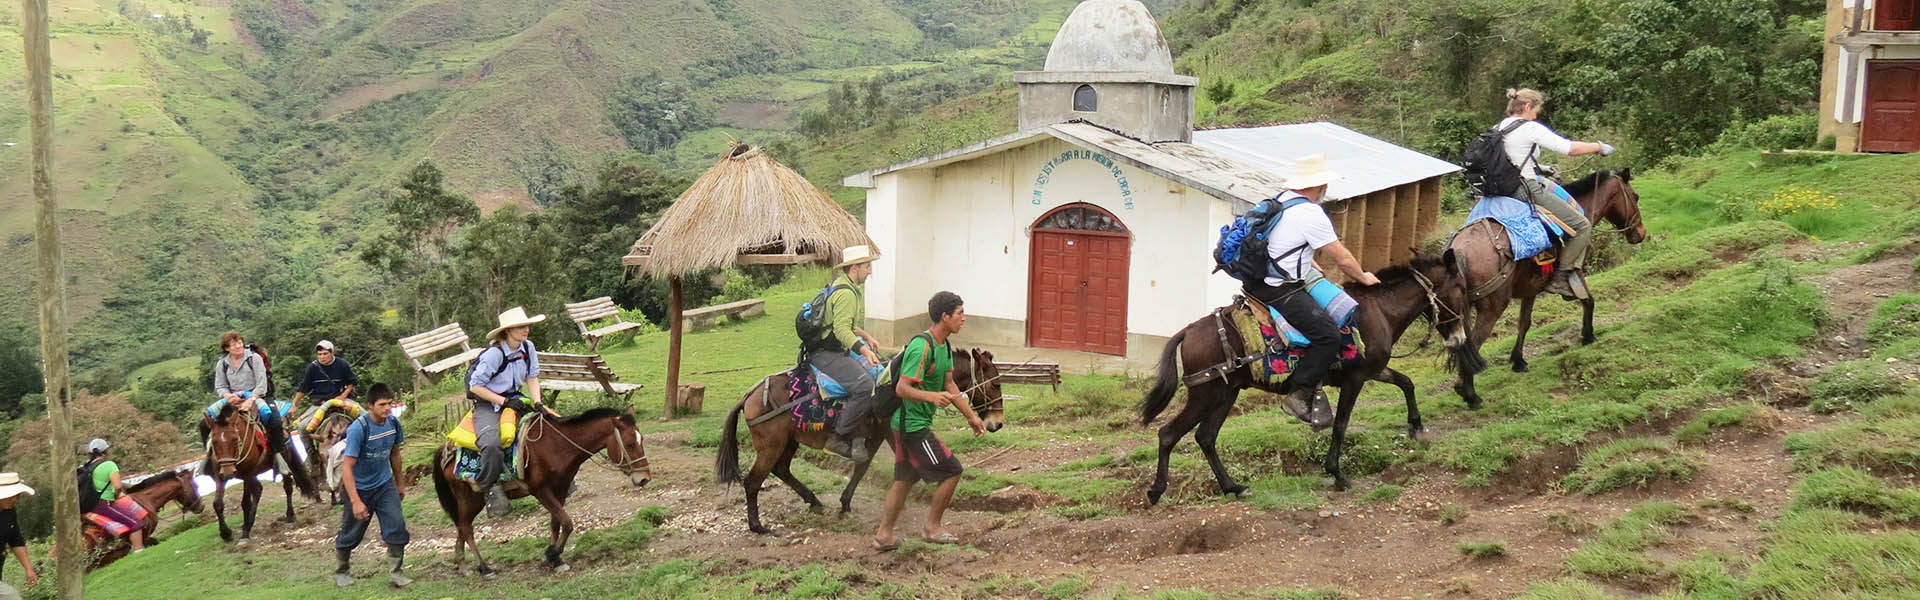 Coex Amazon - Utenfor Allfarvei - Viajes personalizados en Perú para grupos pequeños